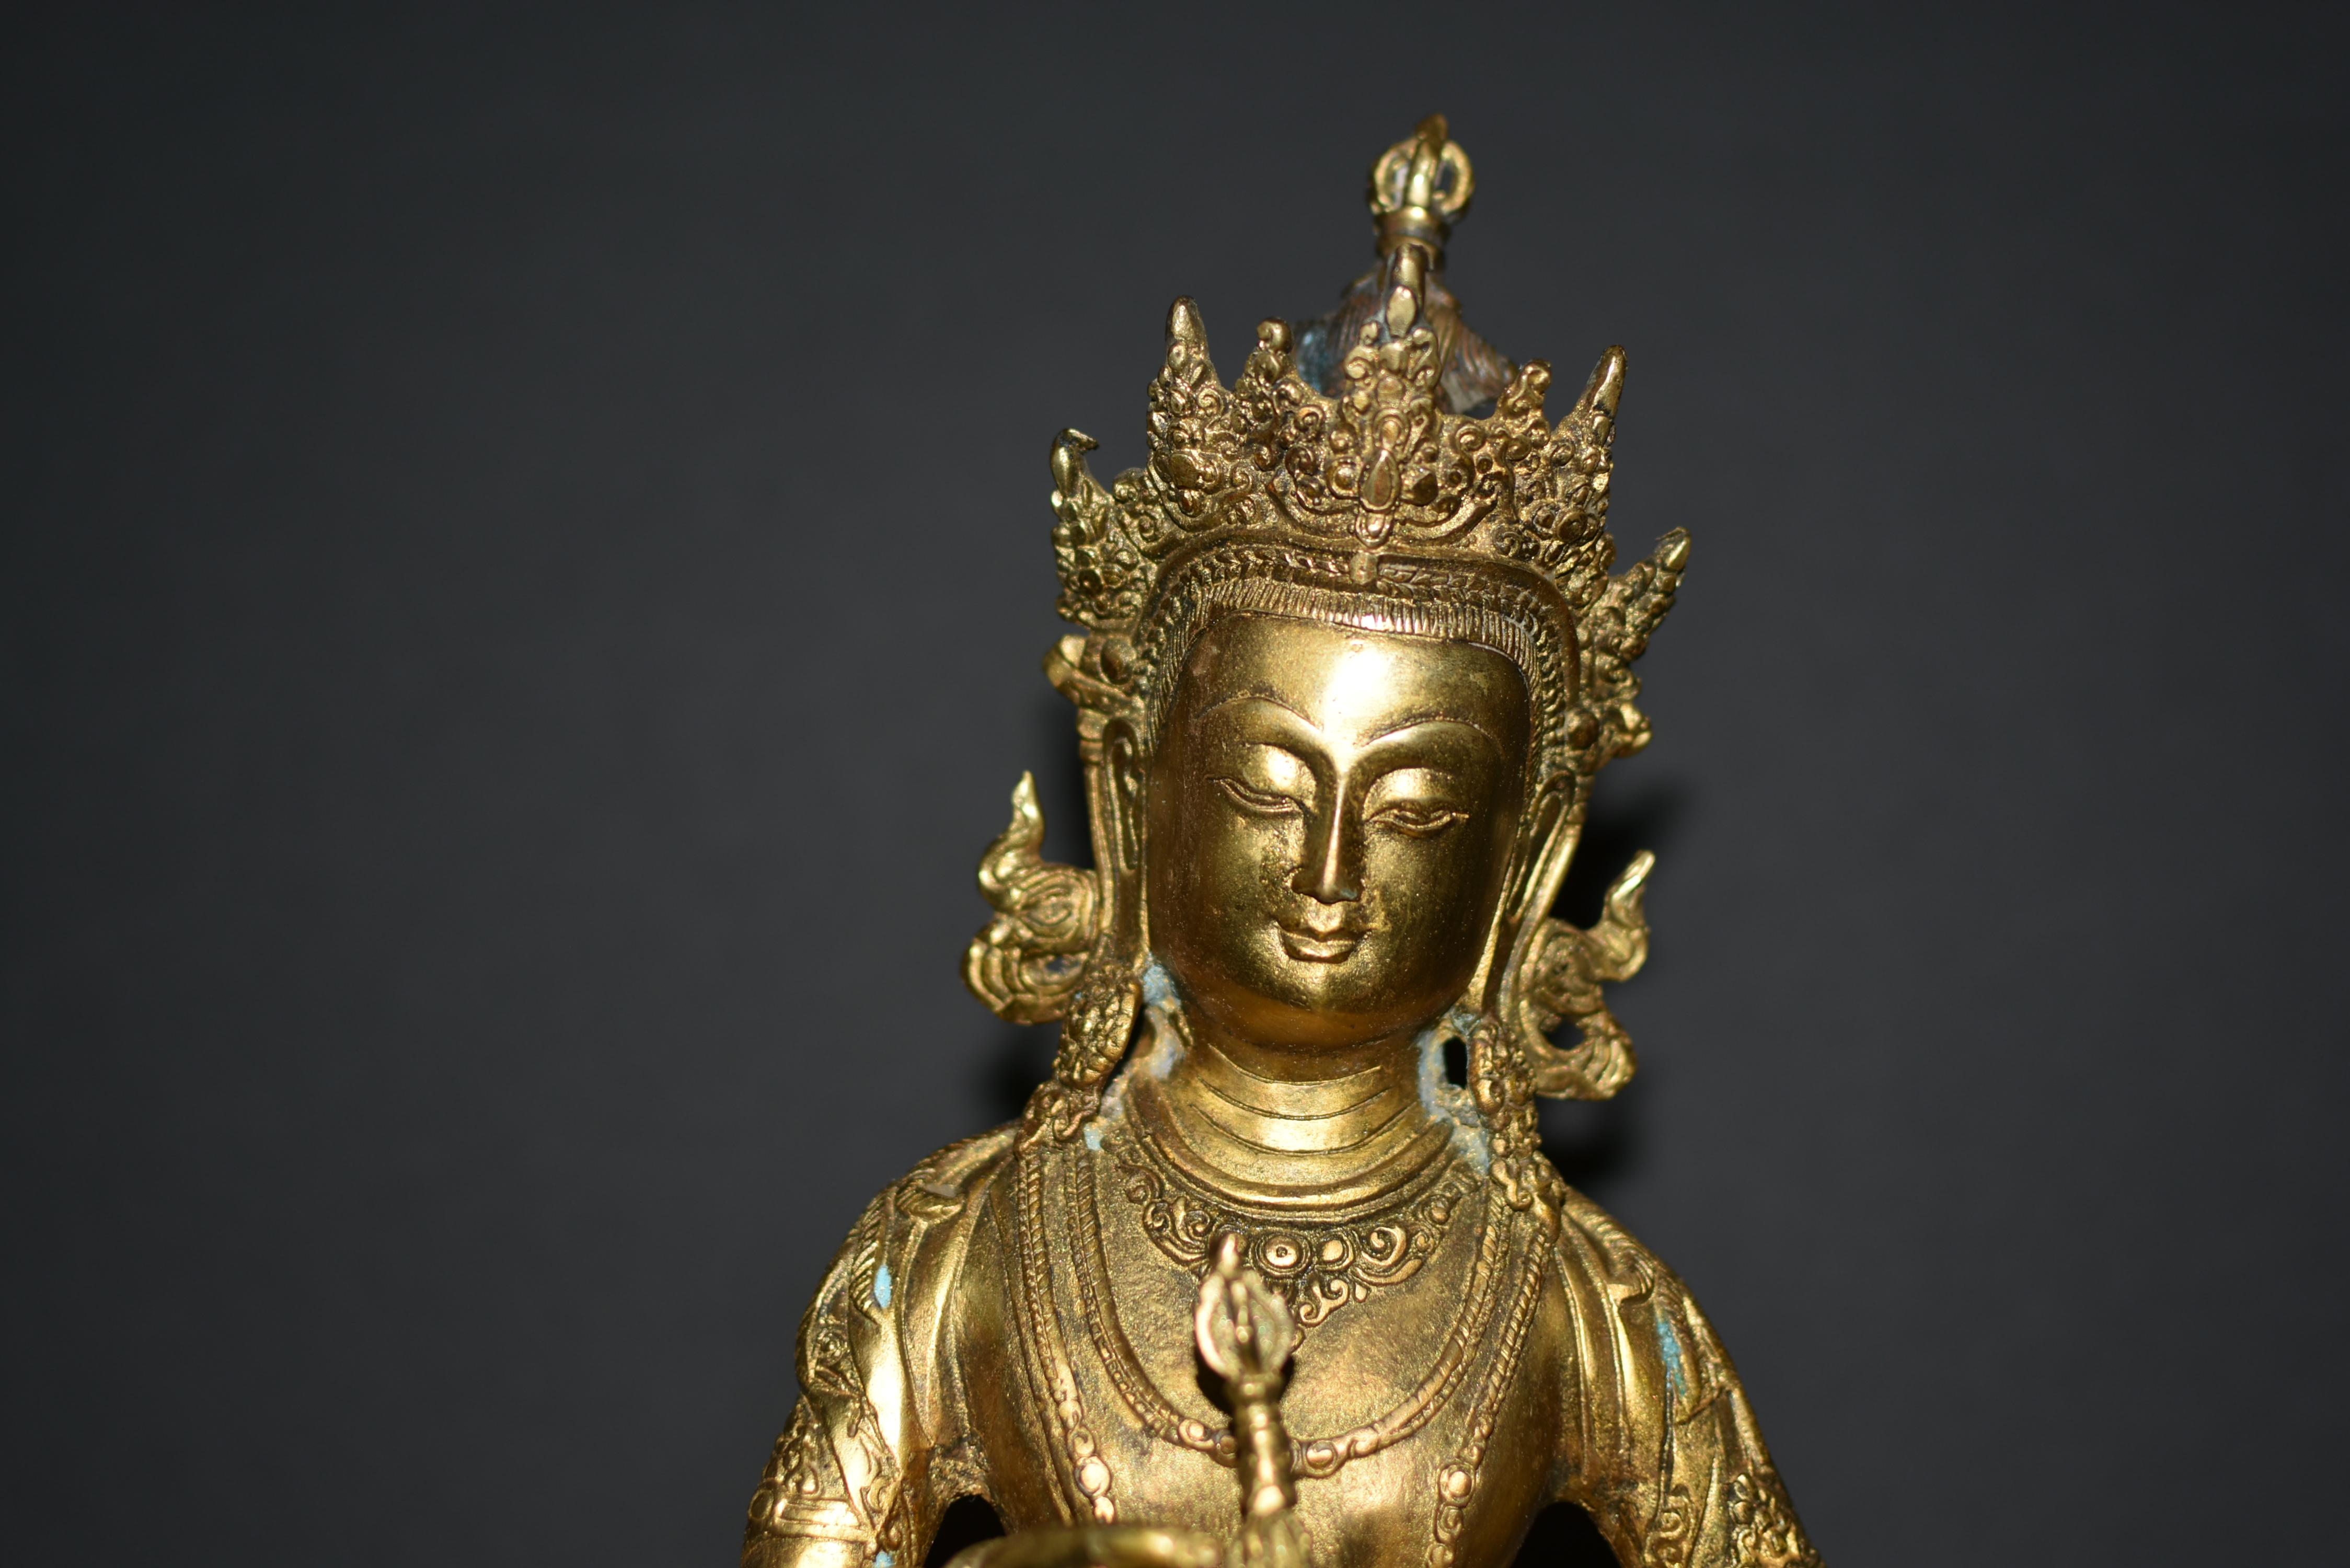 Diese vergoldete Bronzeskulptur des Buddha Vajrasattva ist ein Zeugnis für die erhabene Handwerkskunst und die spirituelle Bedeutung der tibetisch-buddhistischen Kunst. Die Skulptur wiegt beachtliche 7,25 Pfund und zeigt die erleuchtete Gottheit in